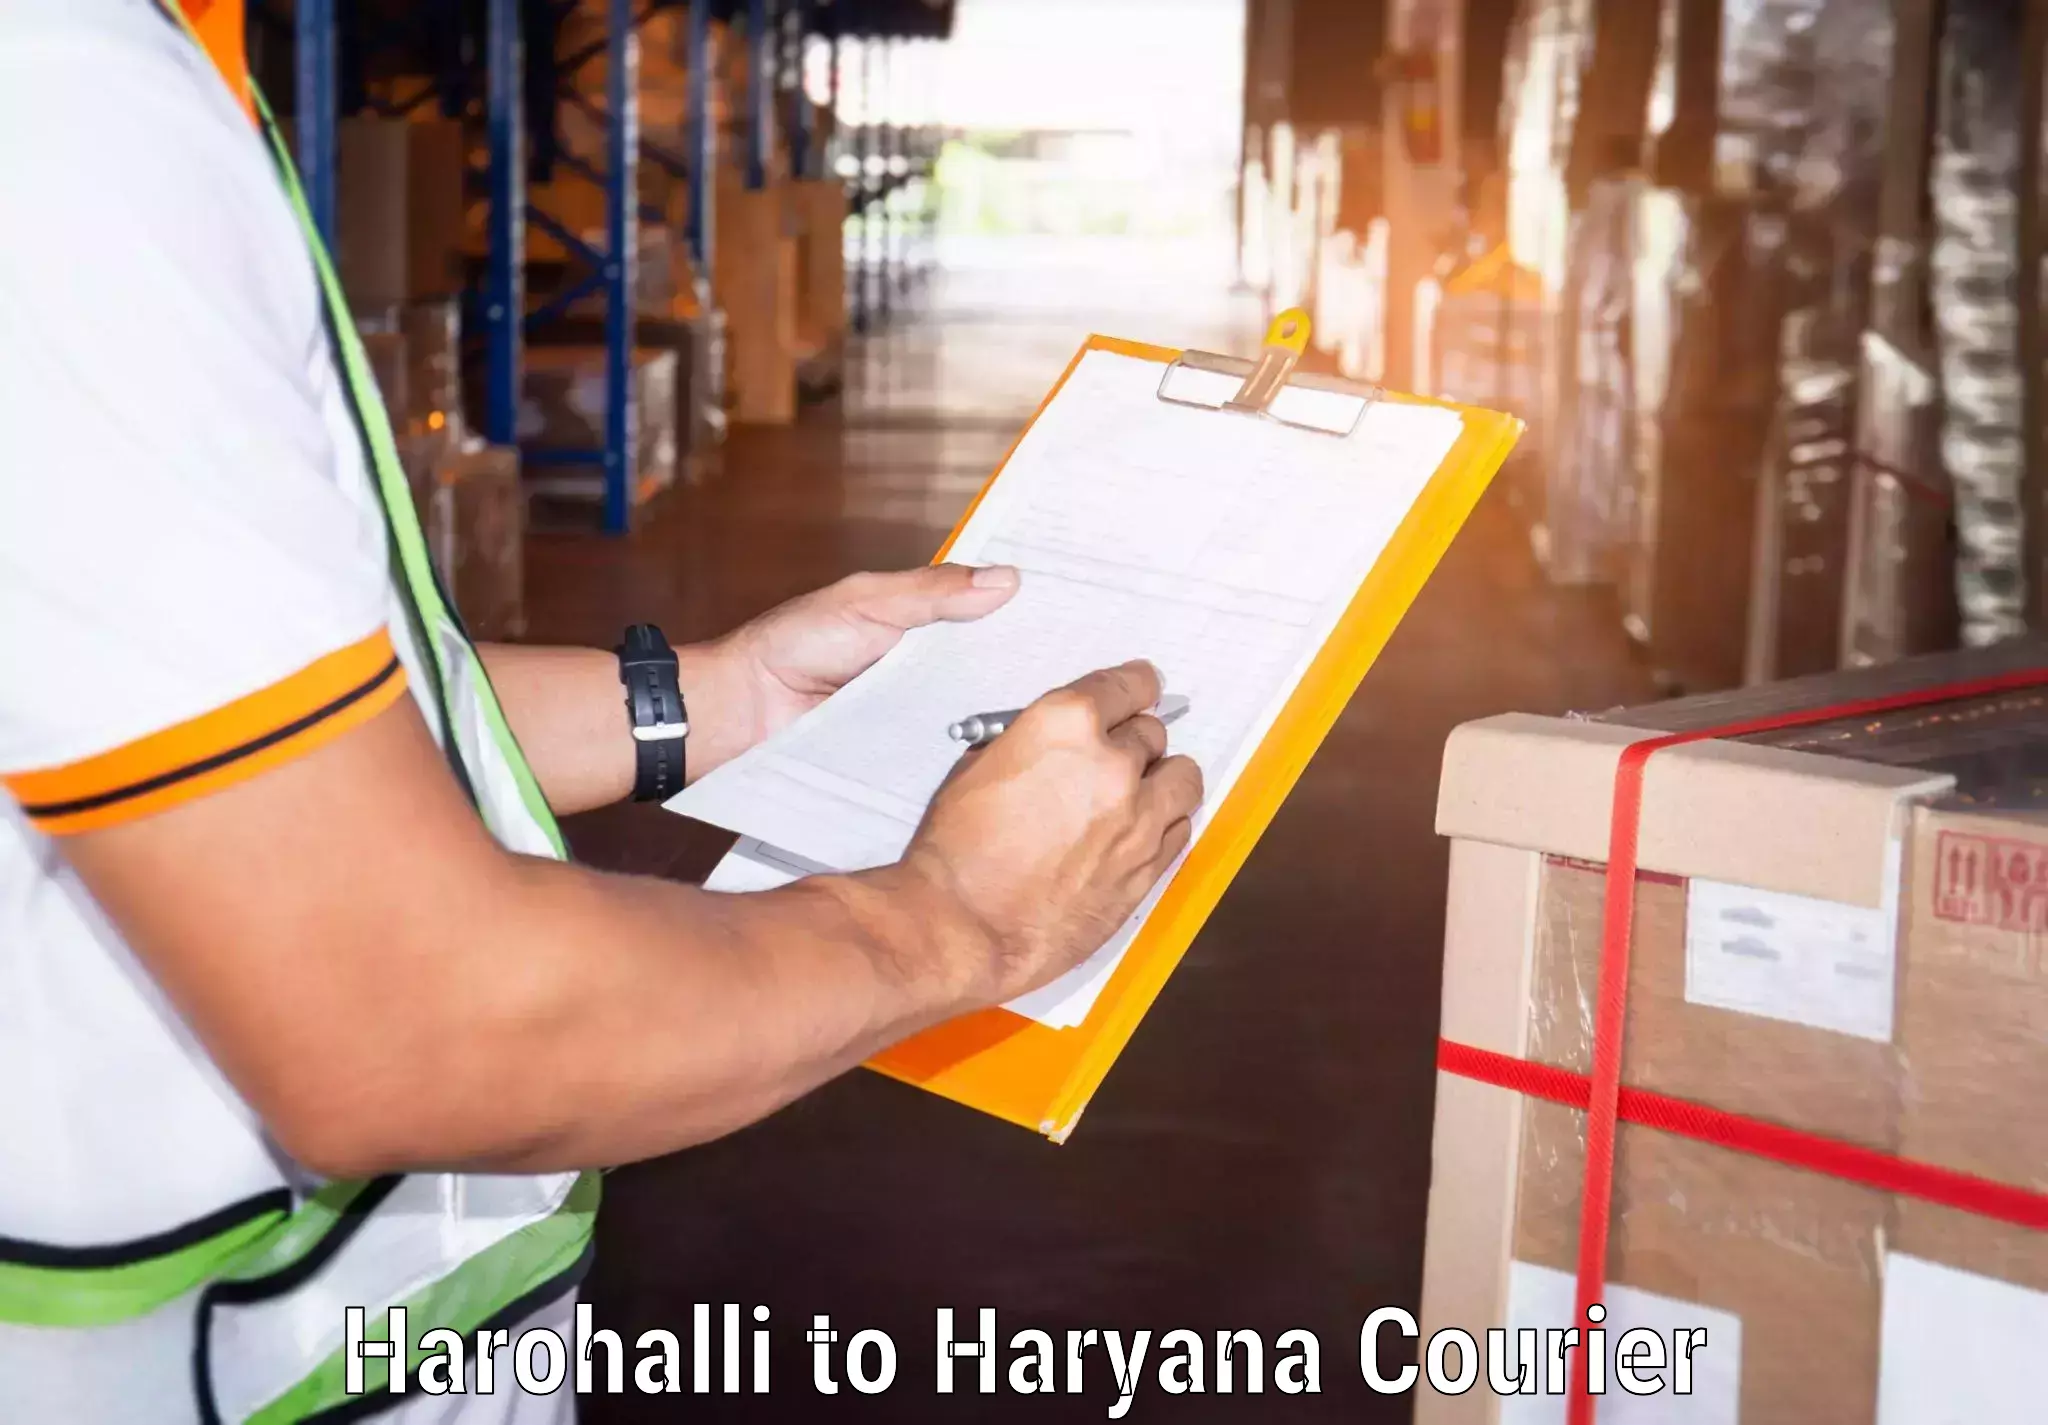 Advanced shipping services Harohalli to Sohna